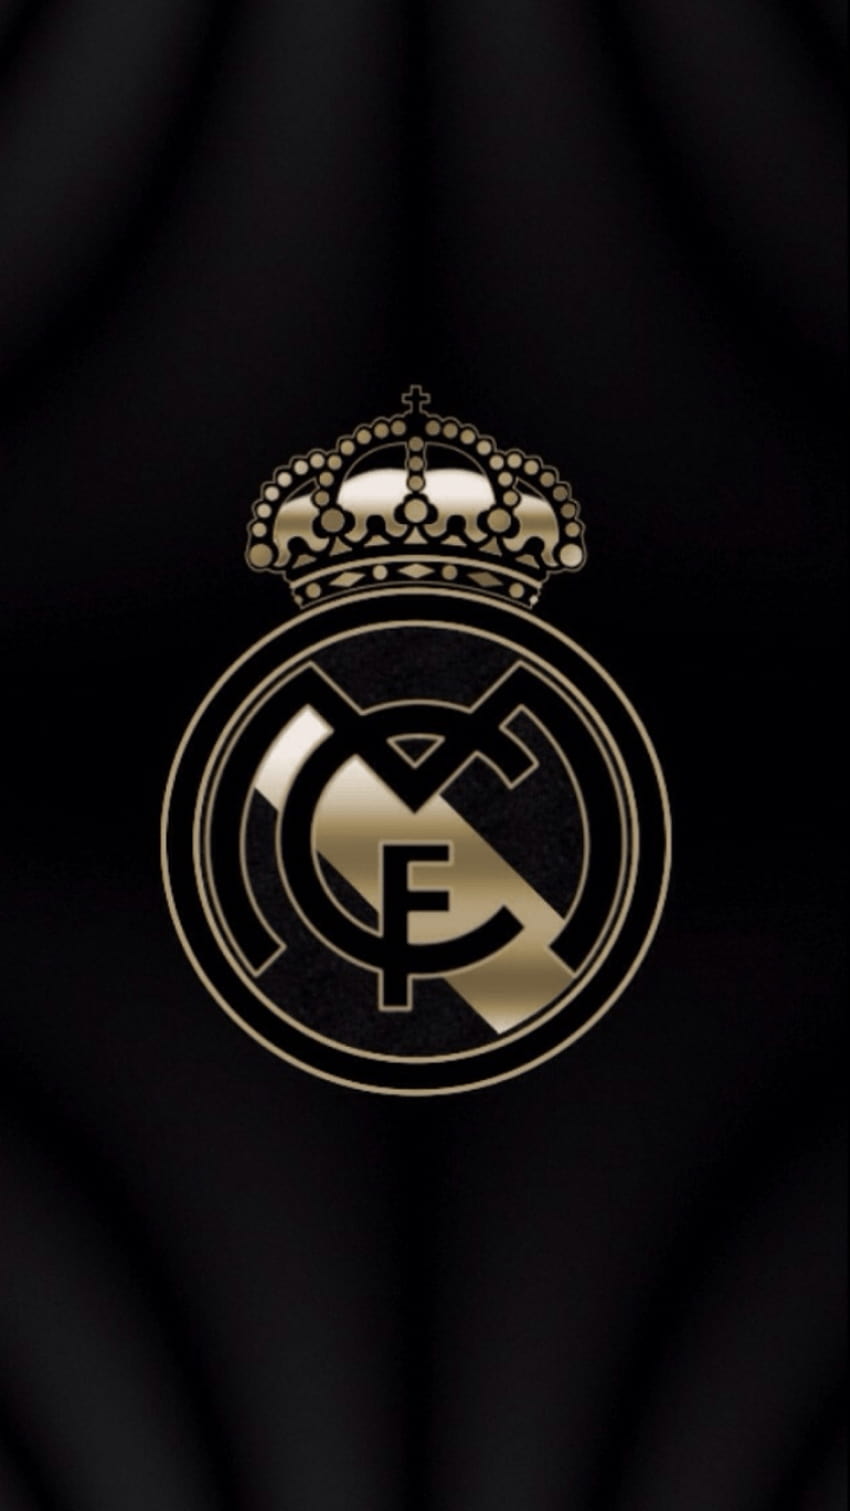 Hình nền Real Madrid iPhone sẽ là phần mềm không thể thiếu để chứng tỏ đam mê và sự yêu thương với đội bóng thành Madrid này. Từ các vận động viên xuất sắc đến huấn luyện viên bậc thầy, hình ảnh đa dạng và đẹp mắt sẽ khiến mọi fan hâm mộ không ngừng đặt làm hình nền.